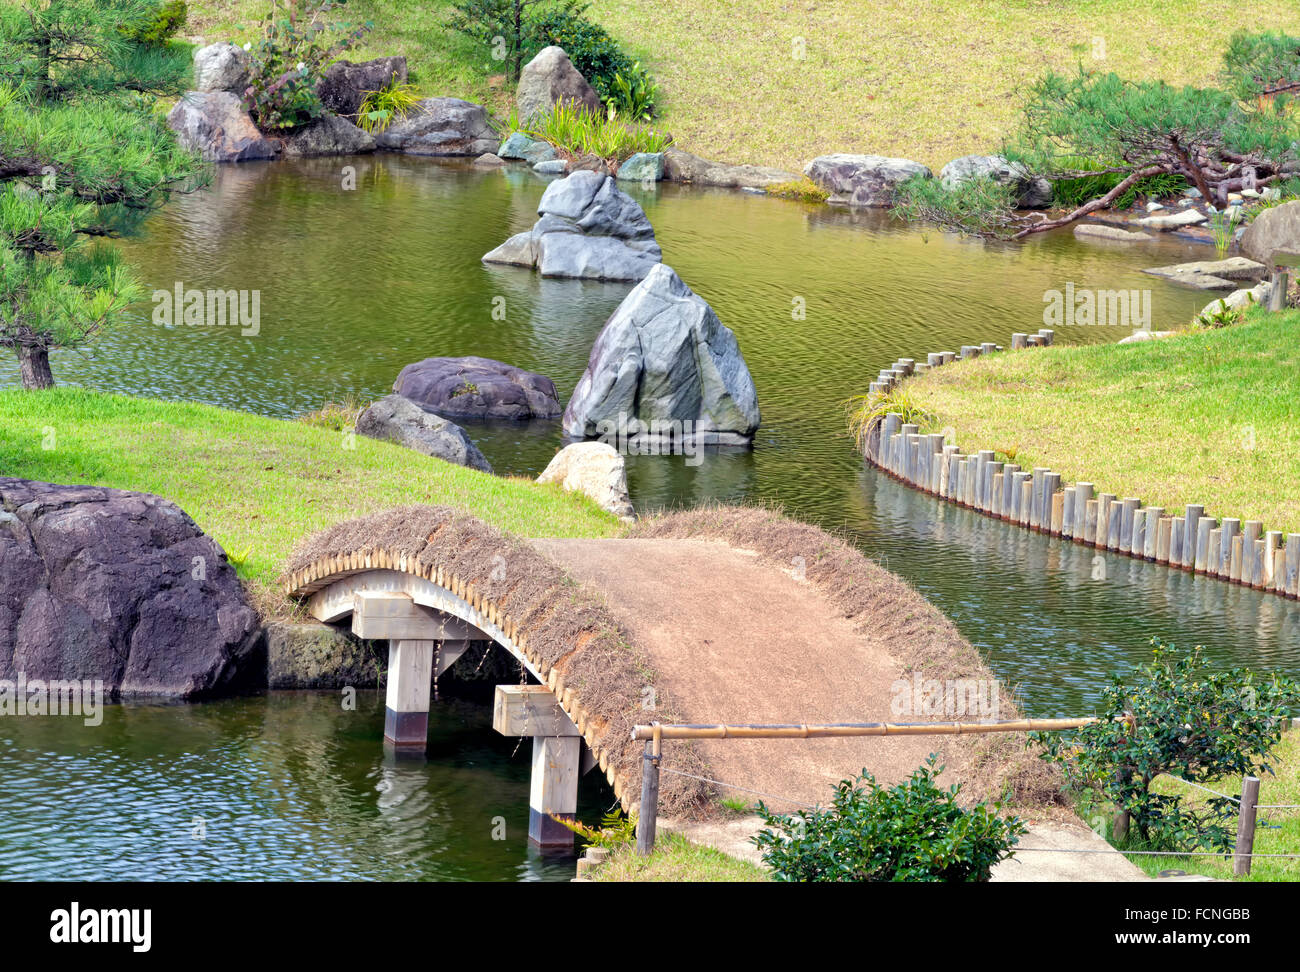 Chemin de jardin sur pont rustique dans le lac parc avec de grands rochers de granit et de pins verts, automne paysage japonais Banque D'Images